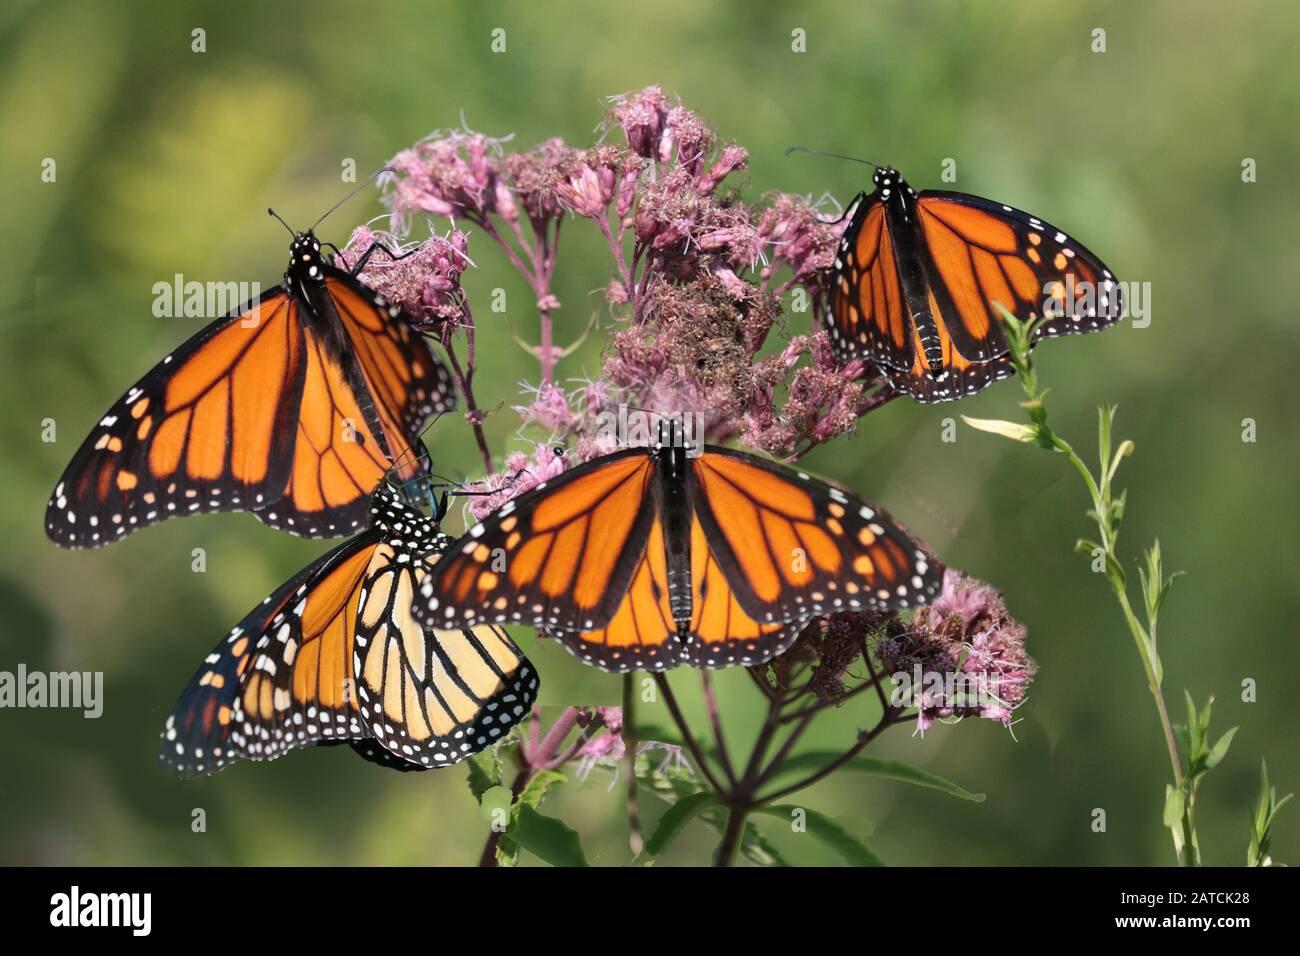 Four monarchs on a milkweed plant Stock Photo